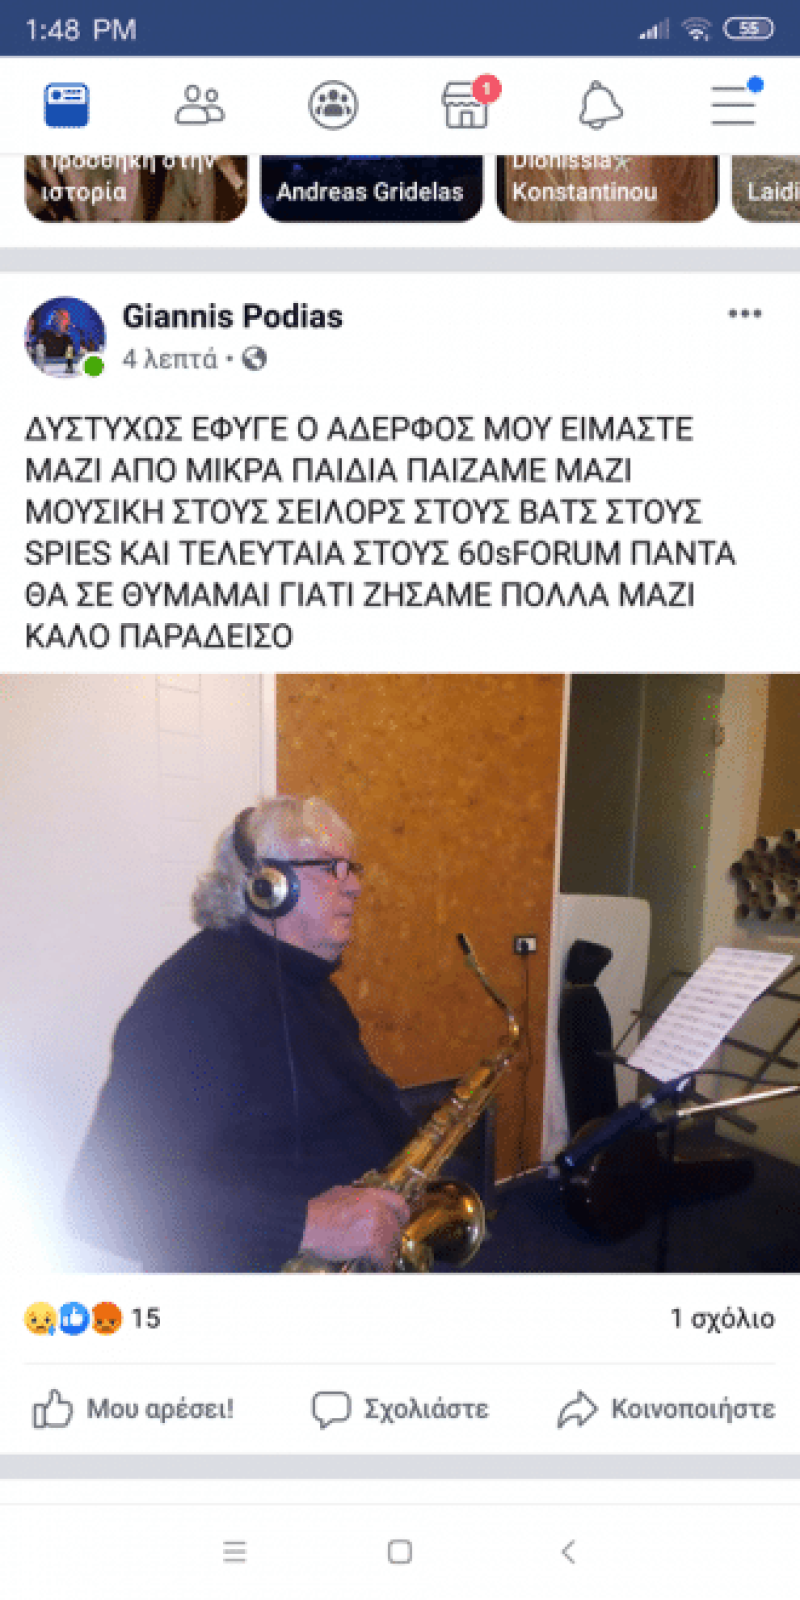 Θρήνος! Νεκρός Έλληνας τραγουδιστής!